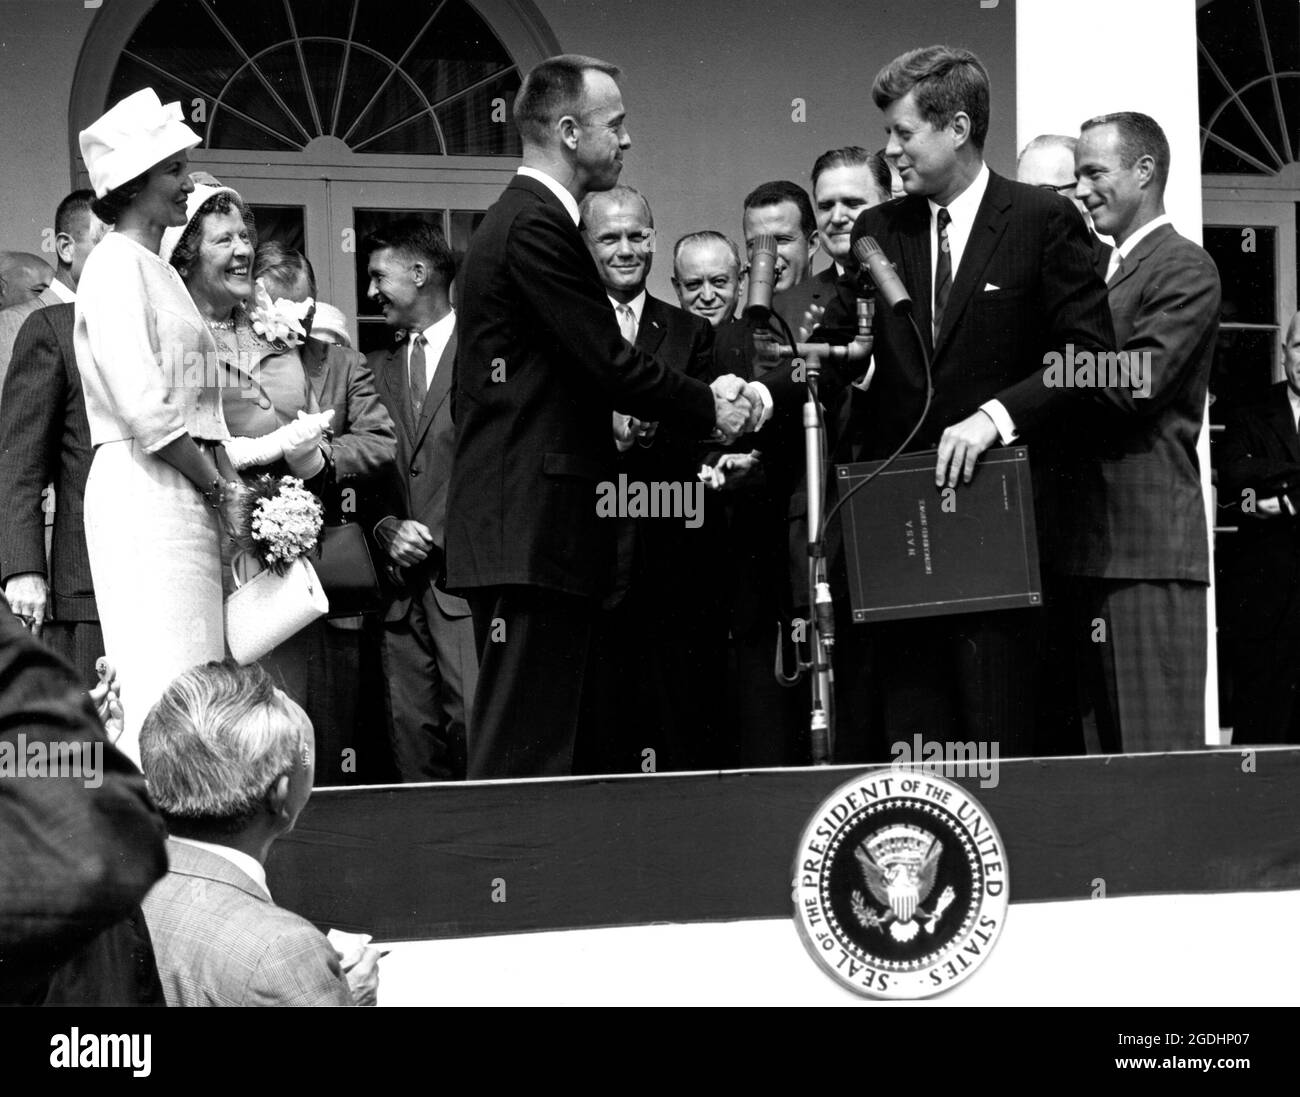 Präsident John F. Kennedy gratuliert dem Astronauten Alan B. Shepard, dem ersten Amerikaner im All, zu seiner historischen Fahrt mit der Raumsonde Freedom 7 am 5. Mai 1961 und überreicht ihm den NASA Distinguished Service Award. Stockfoto